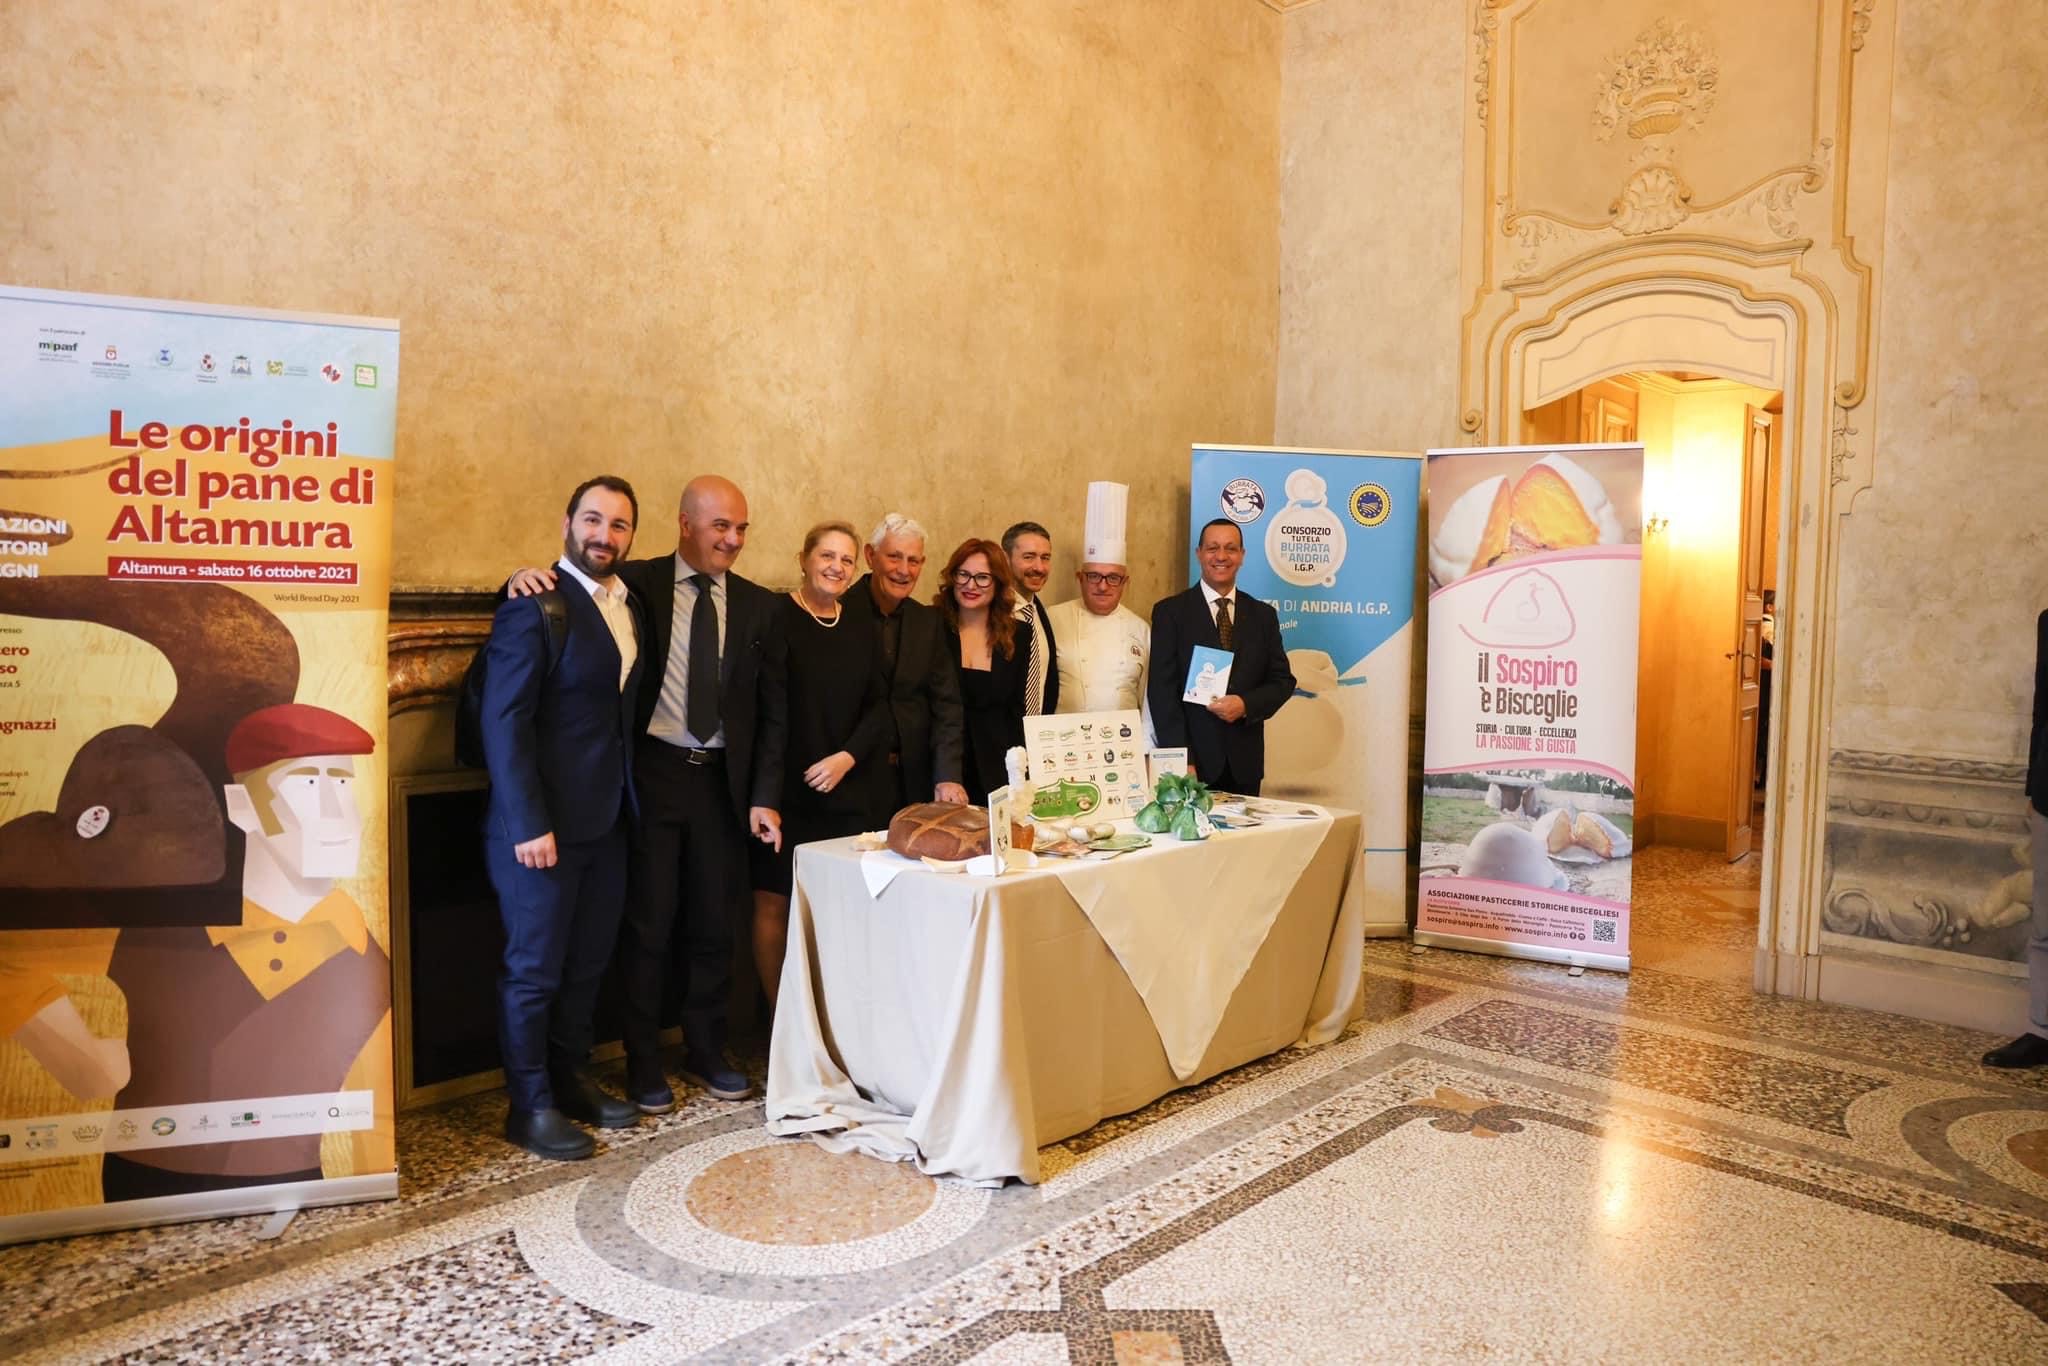 Galleria Di Bari ieri all’evento “I sapori della Puglia Imperiale sulle orme di Federico II” a Palazzo Saluzzo Paesana a Torino - Diapositiva 6 di 7